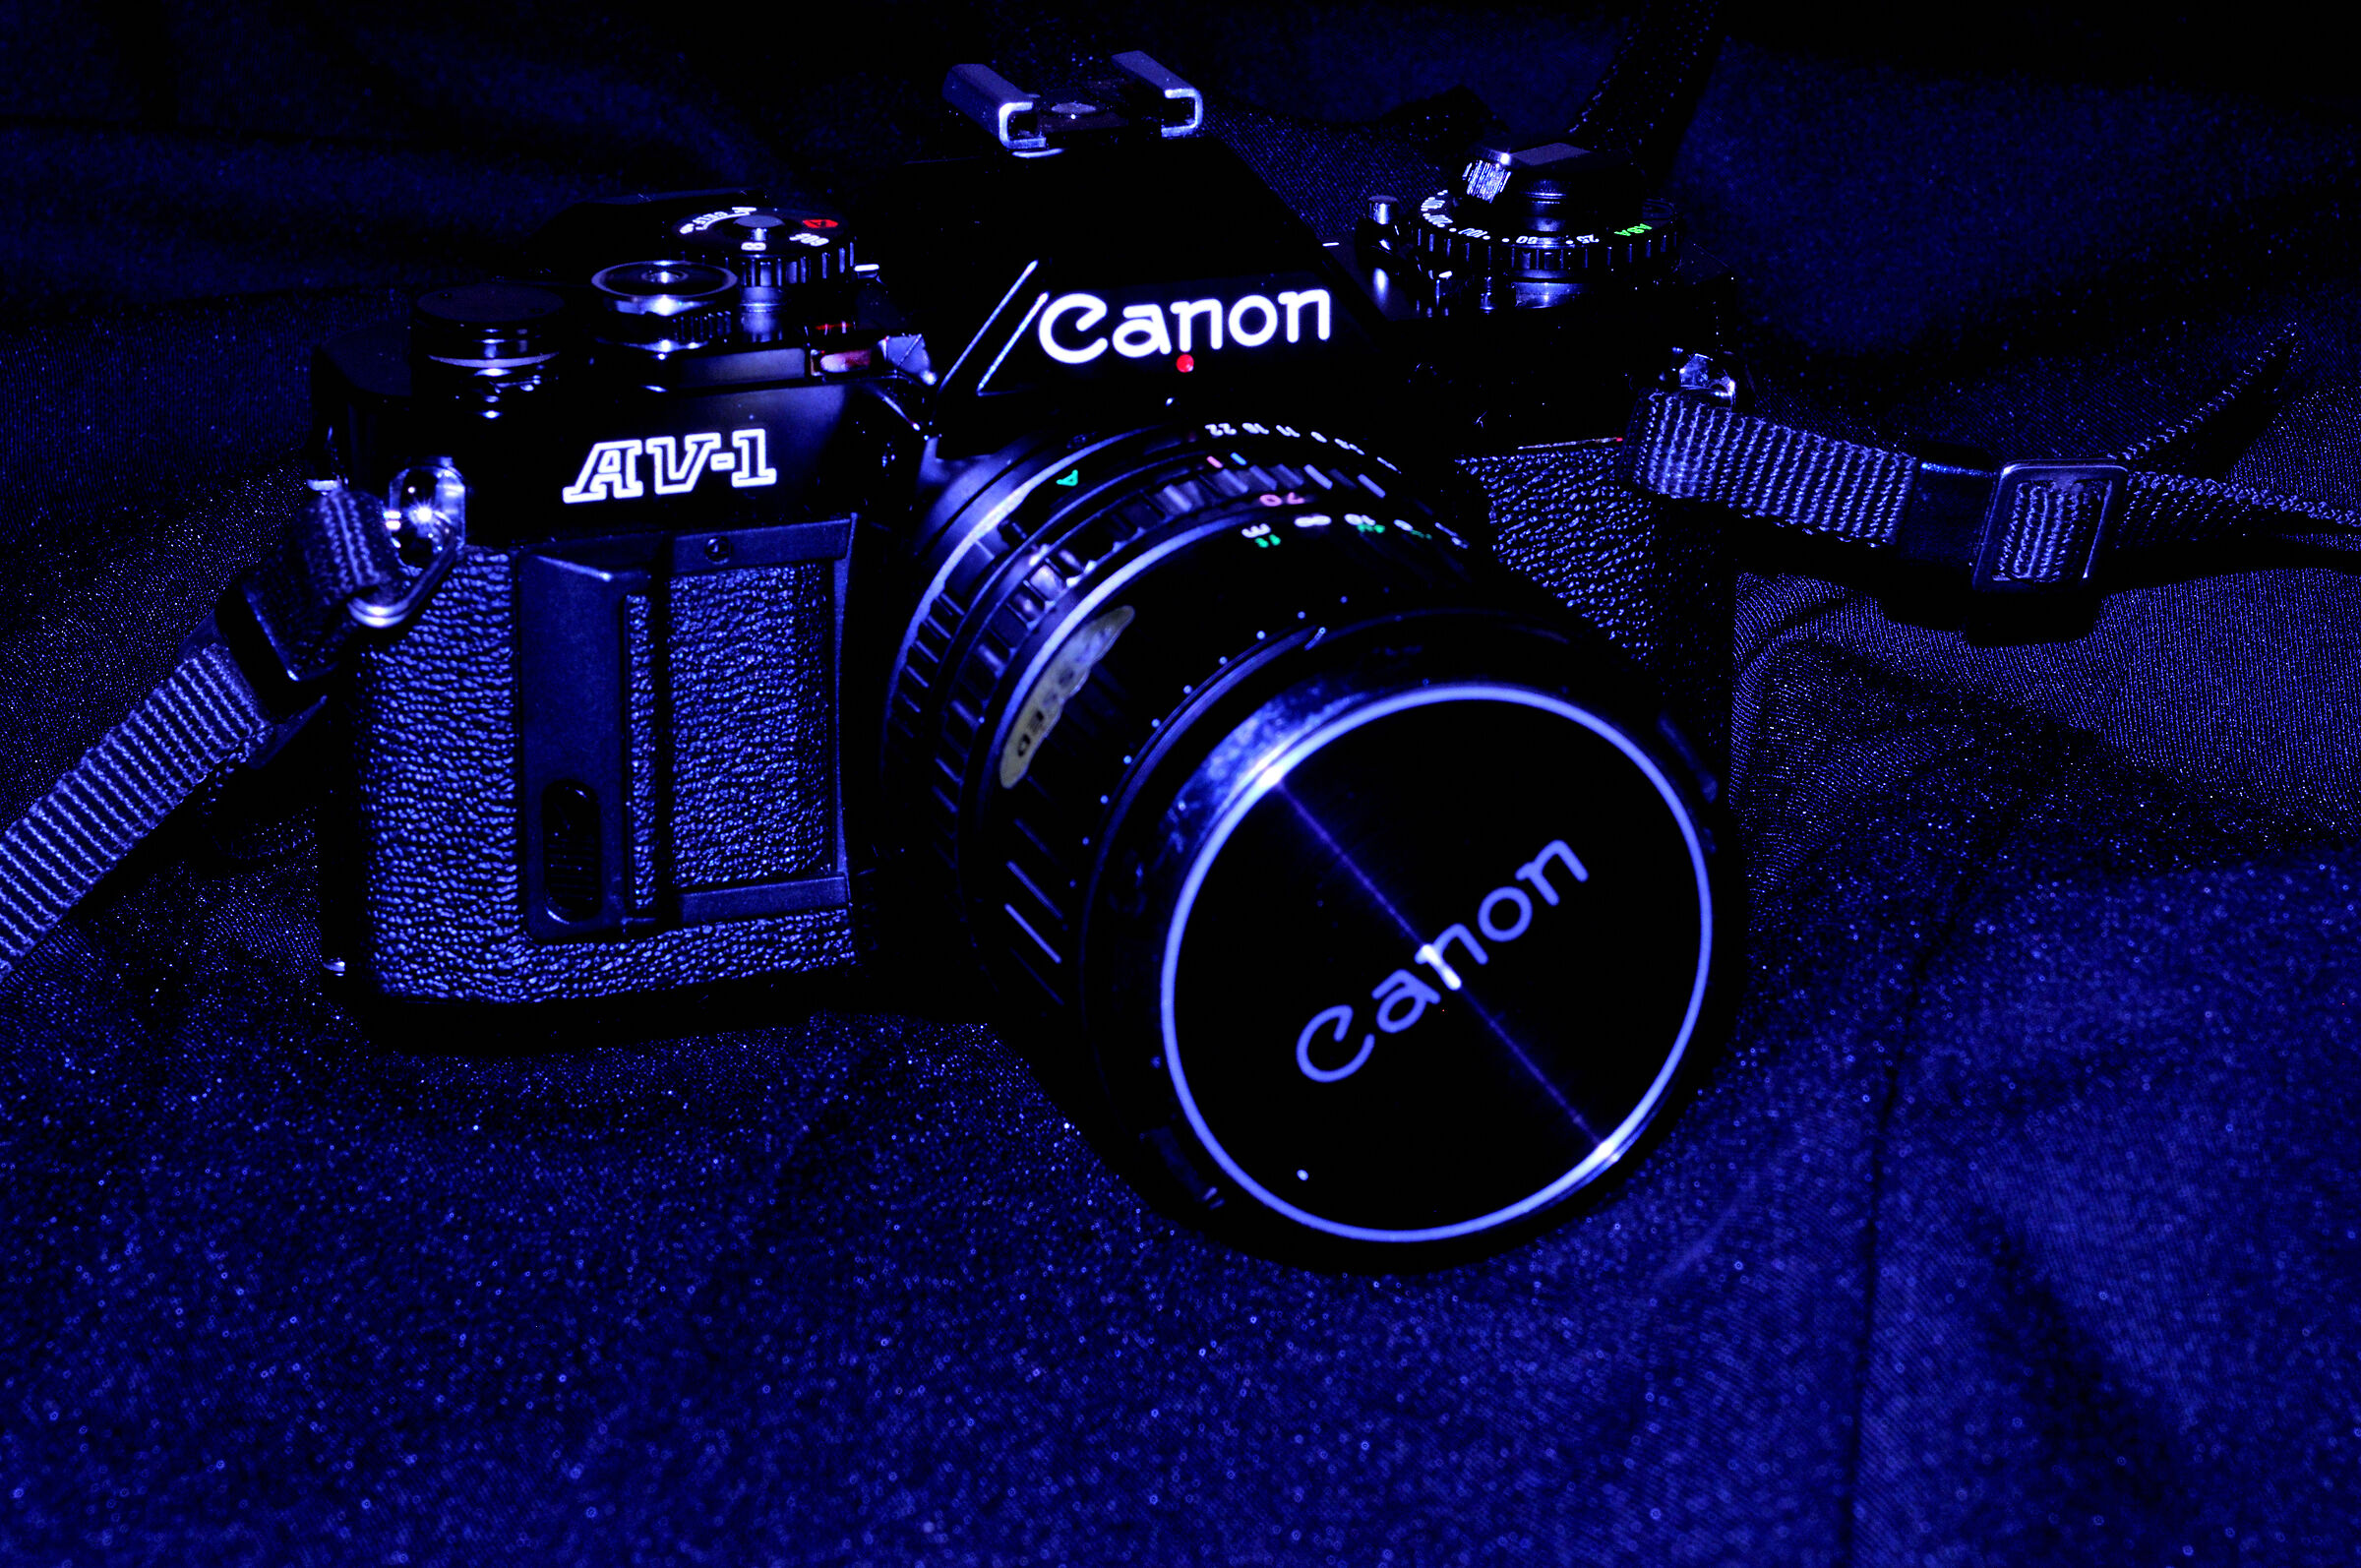 Canon AV-1...